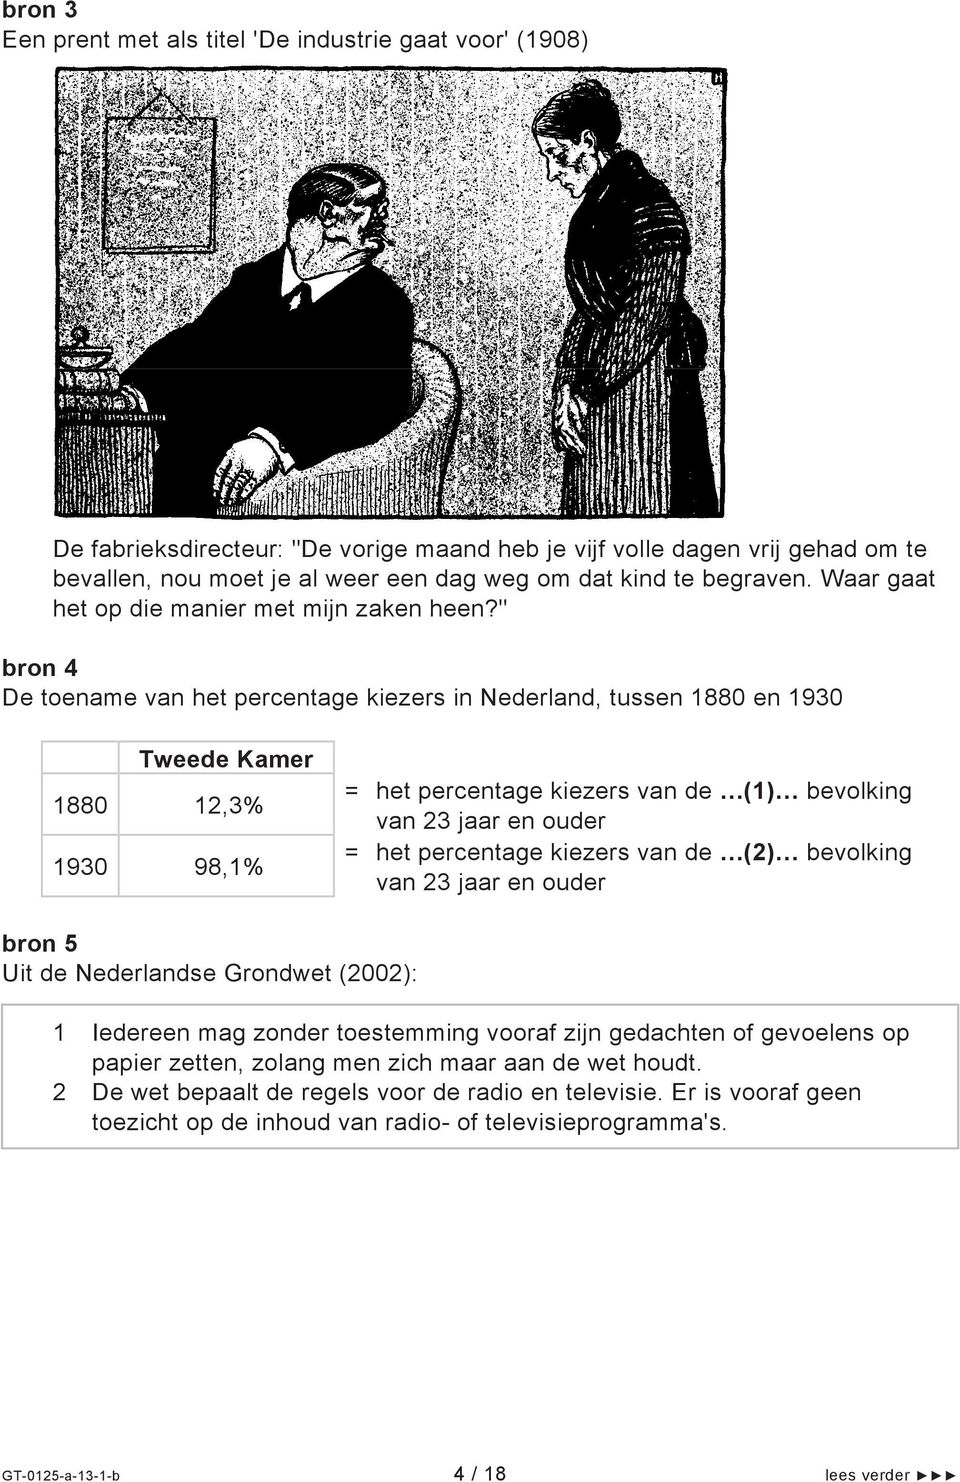 " bron 4 De toename van het percentage kiezers in Nederland, tussen 1880 en 1930 Tweede Kamer 1880 12,3% 1930 98,1% = het percentage kiezers van de (1) bevolking van 23 jaar en ouder = het percentage